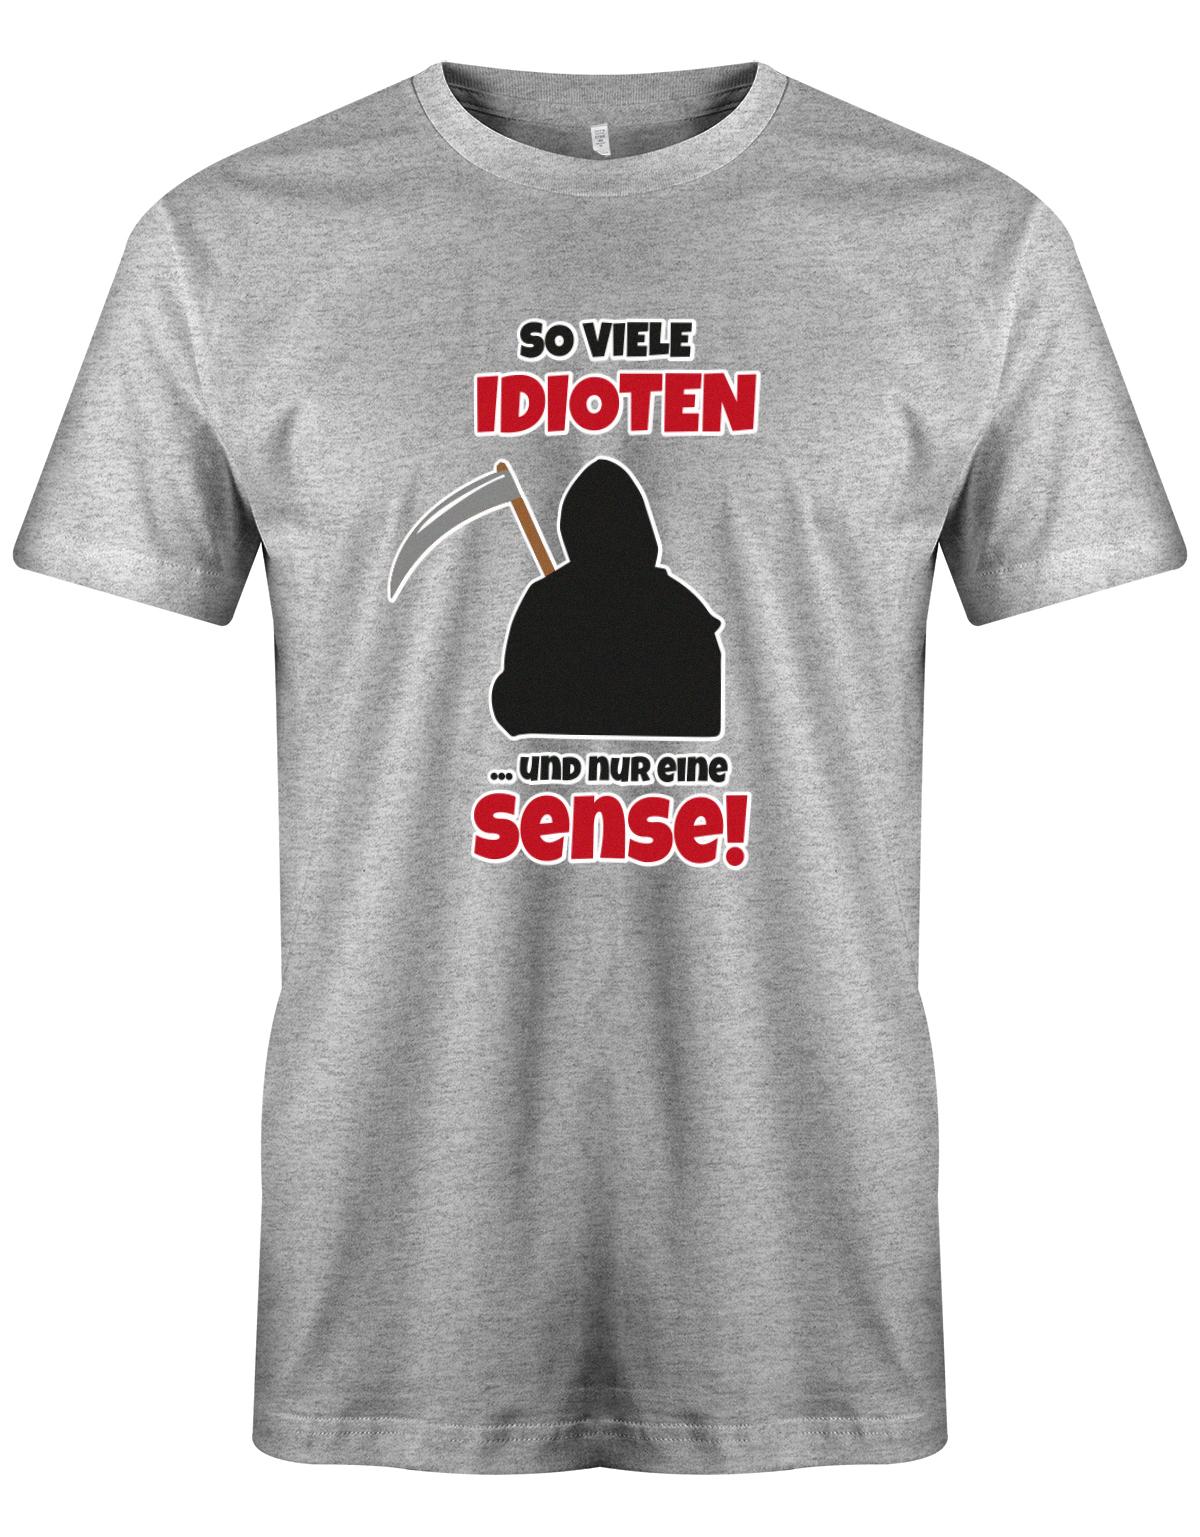 Lustige Sprüche Shirt So viele Idioten und nur eine Sense - Männer Grau